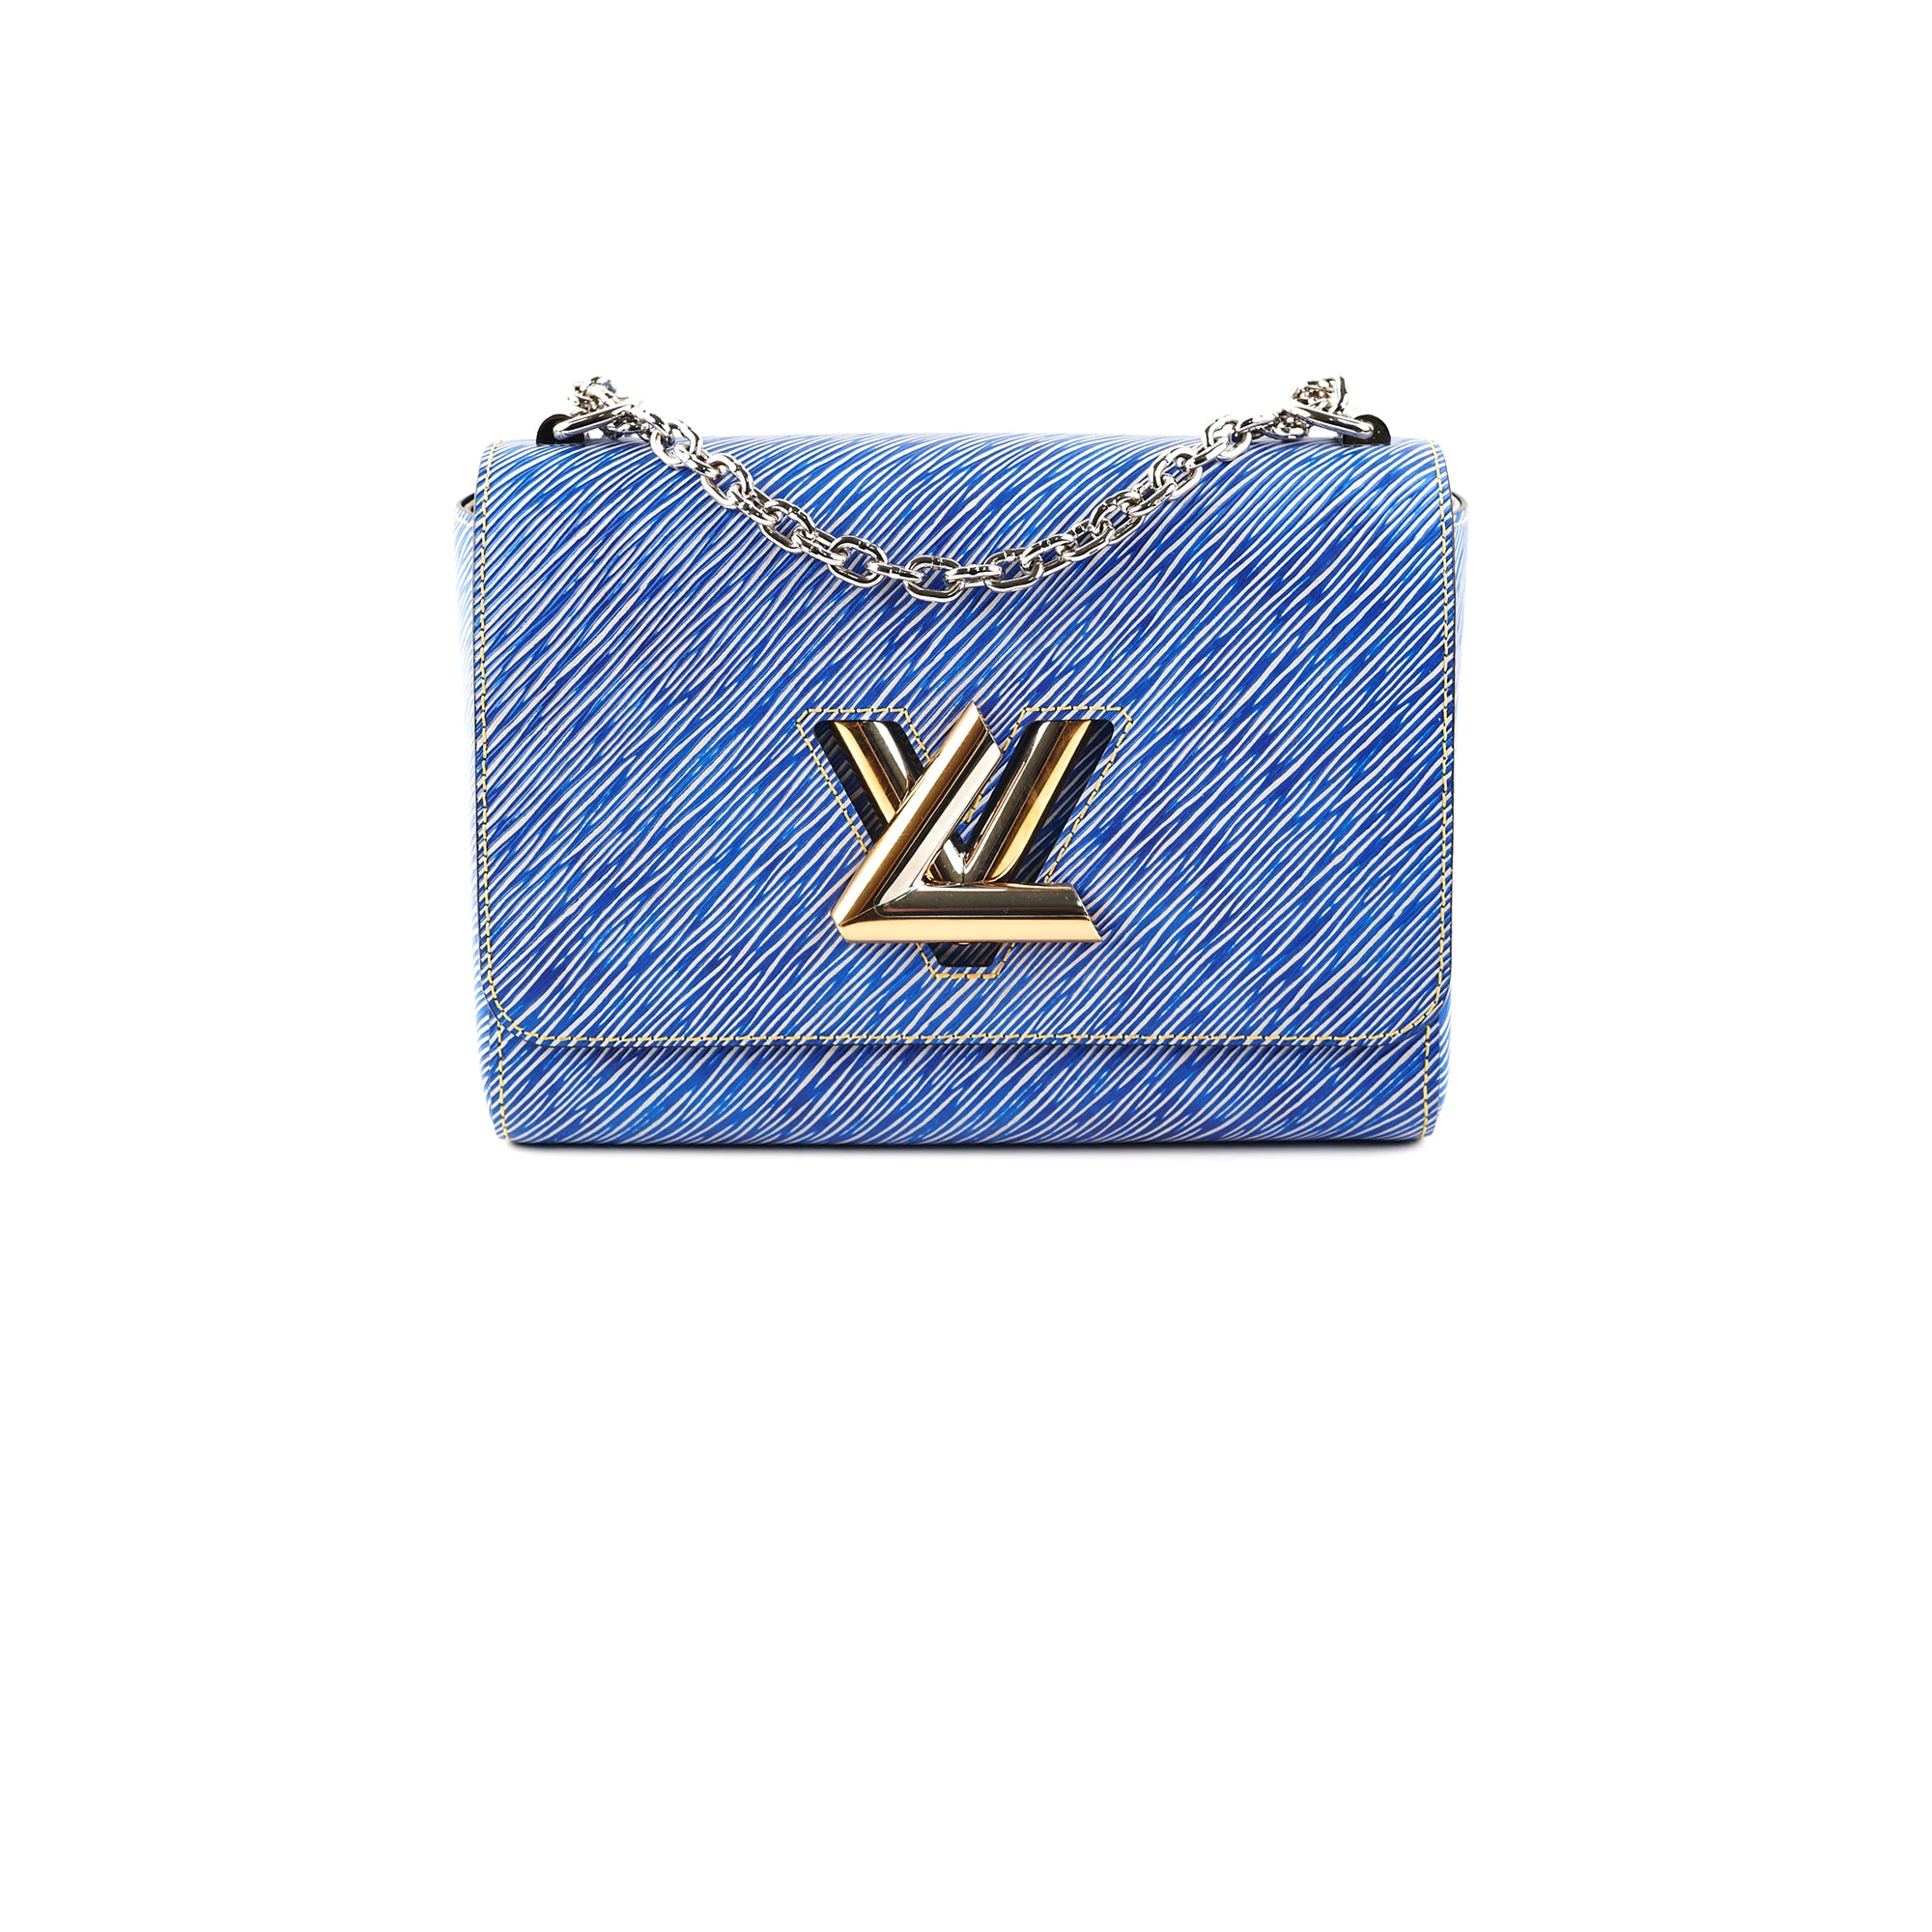 Shop Louis Vuitton Twist mm (M59402, M59403, M59627) by lifeisfun